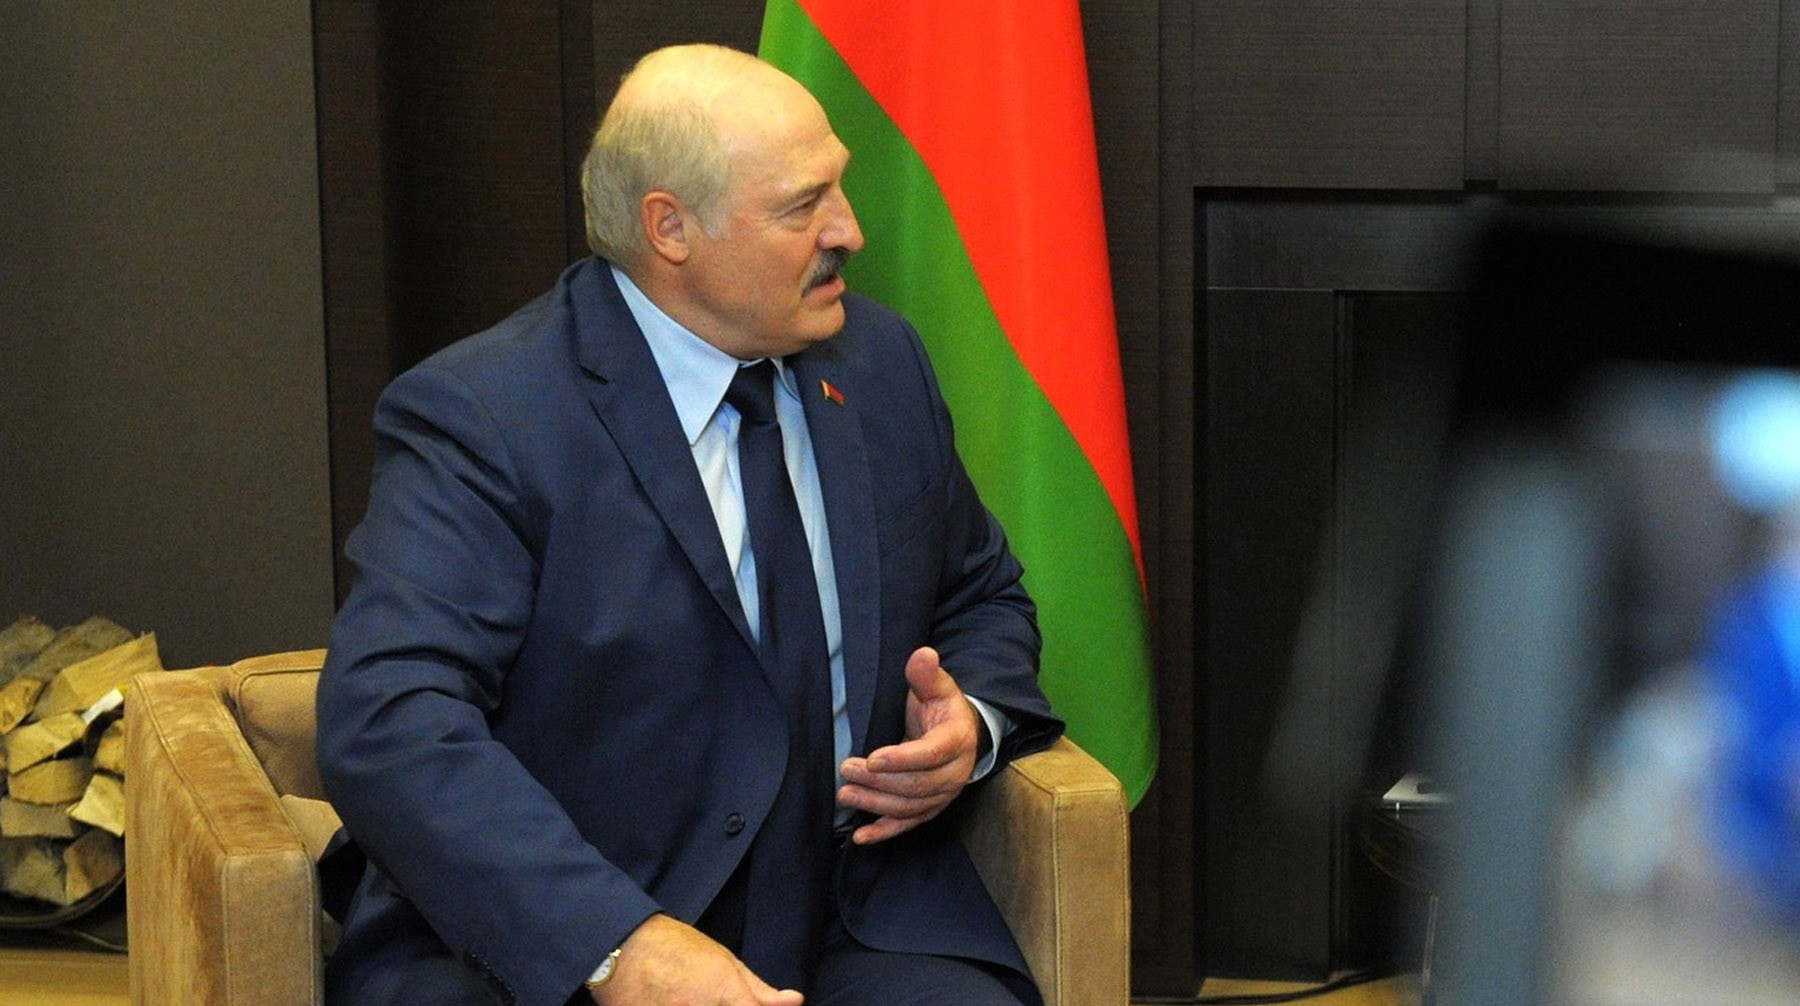 Dailystorm - Лукашенко пришел на встречу к Путину с черным дипломатом